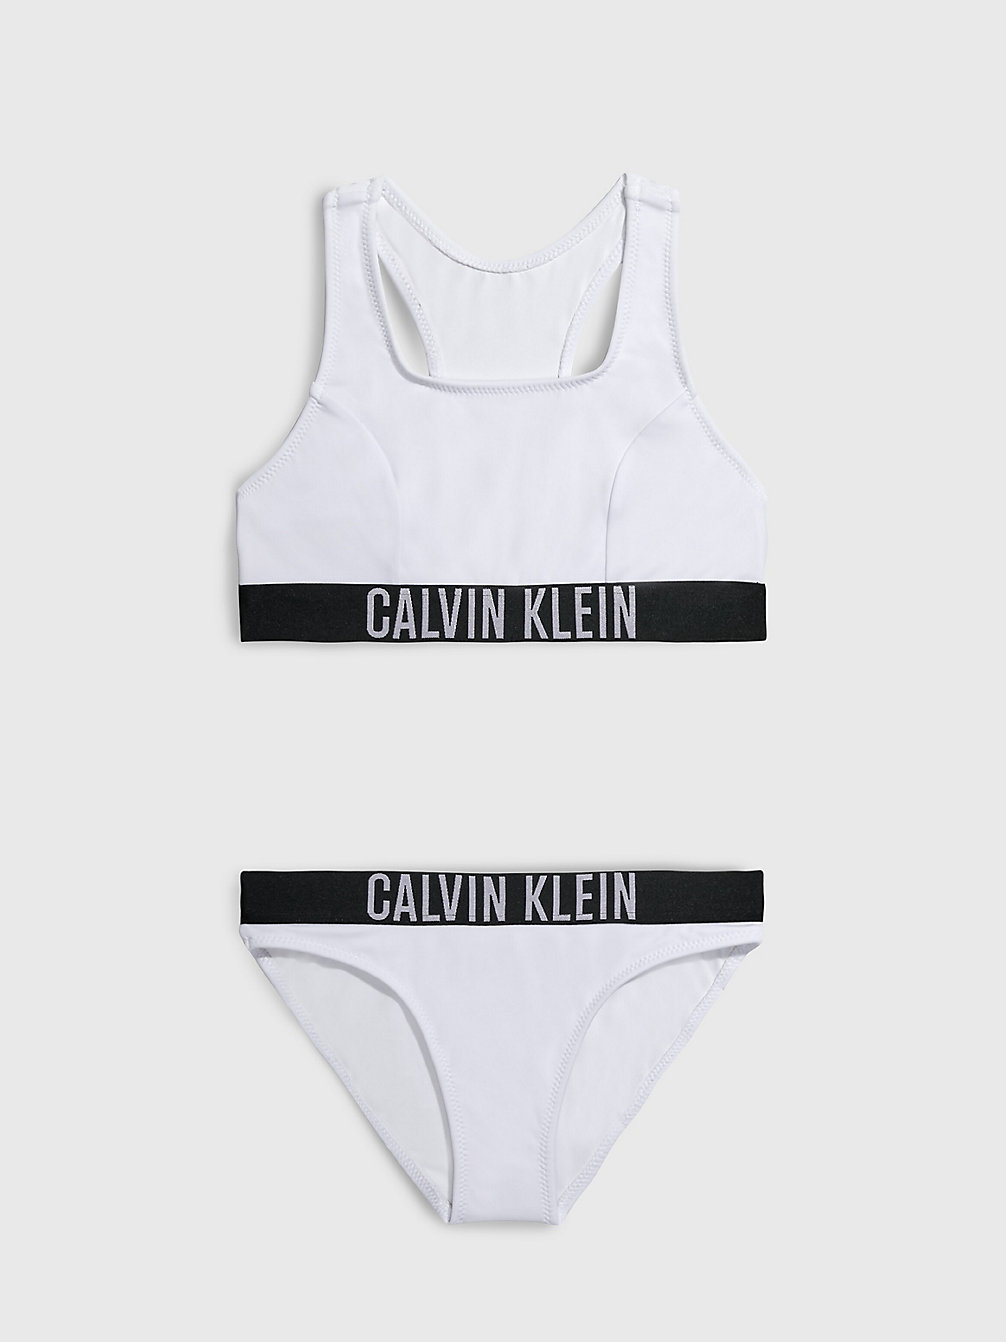 PVH CLASSIC WHITE Bikini-Set Mit Bralette Für Mädchen - Intense Power undefined Maedchen Calvin Klein